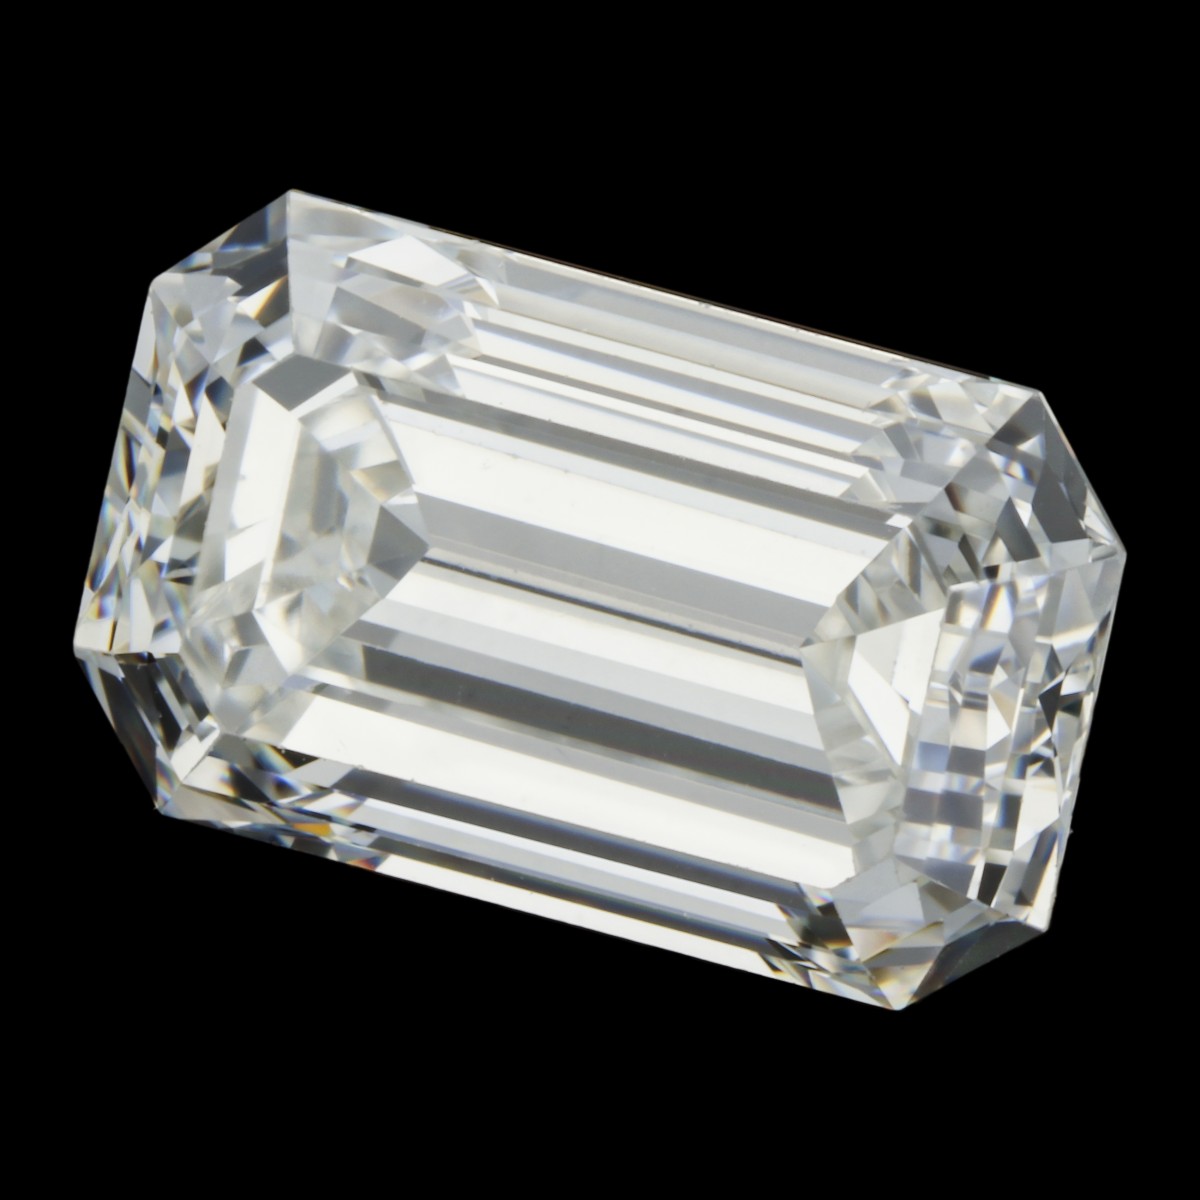 1.05 ct. GIA gecertificeerde natuurlijke diamant.